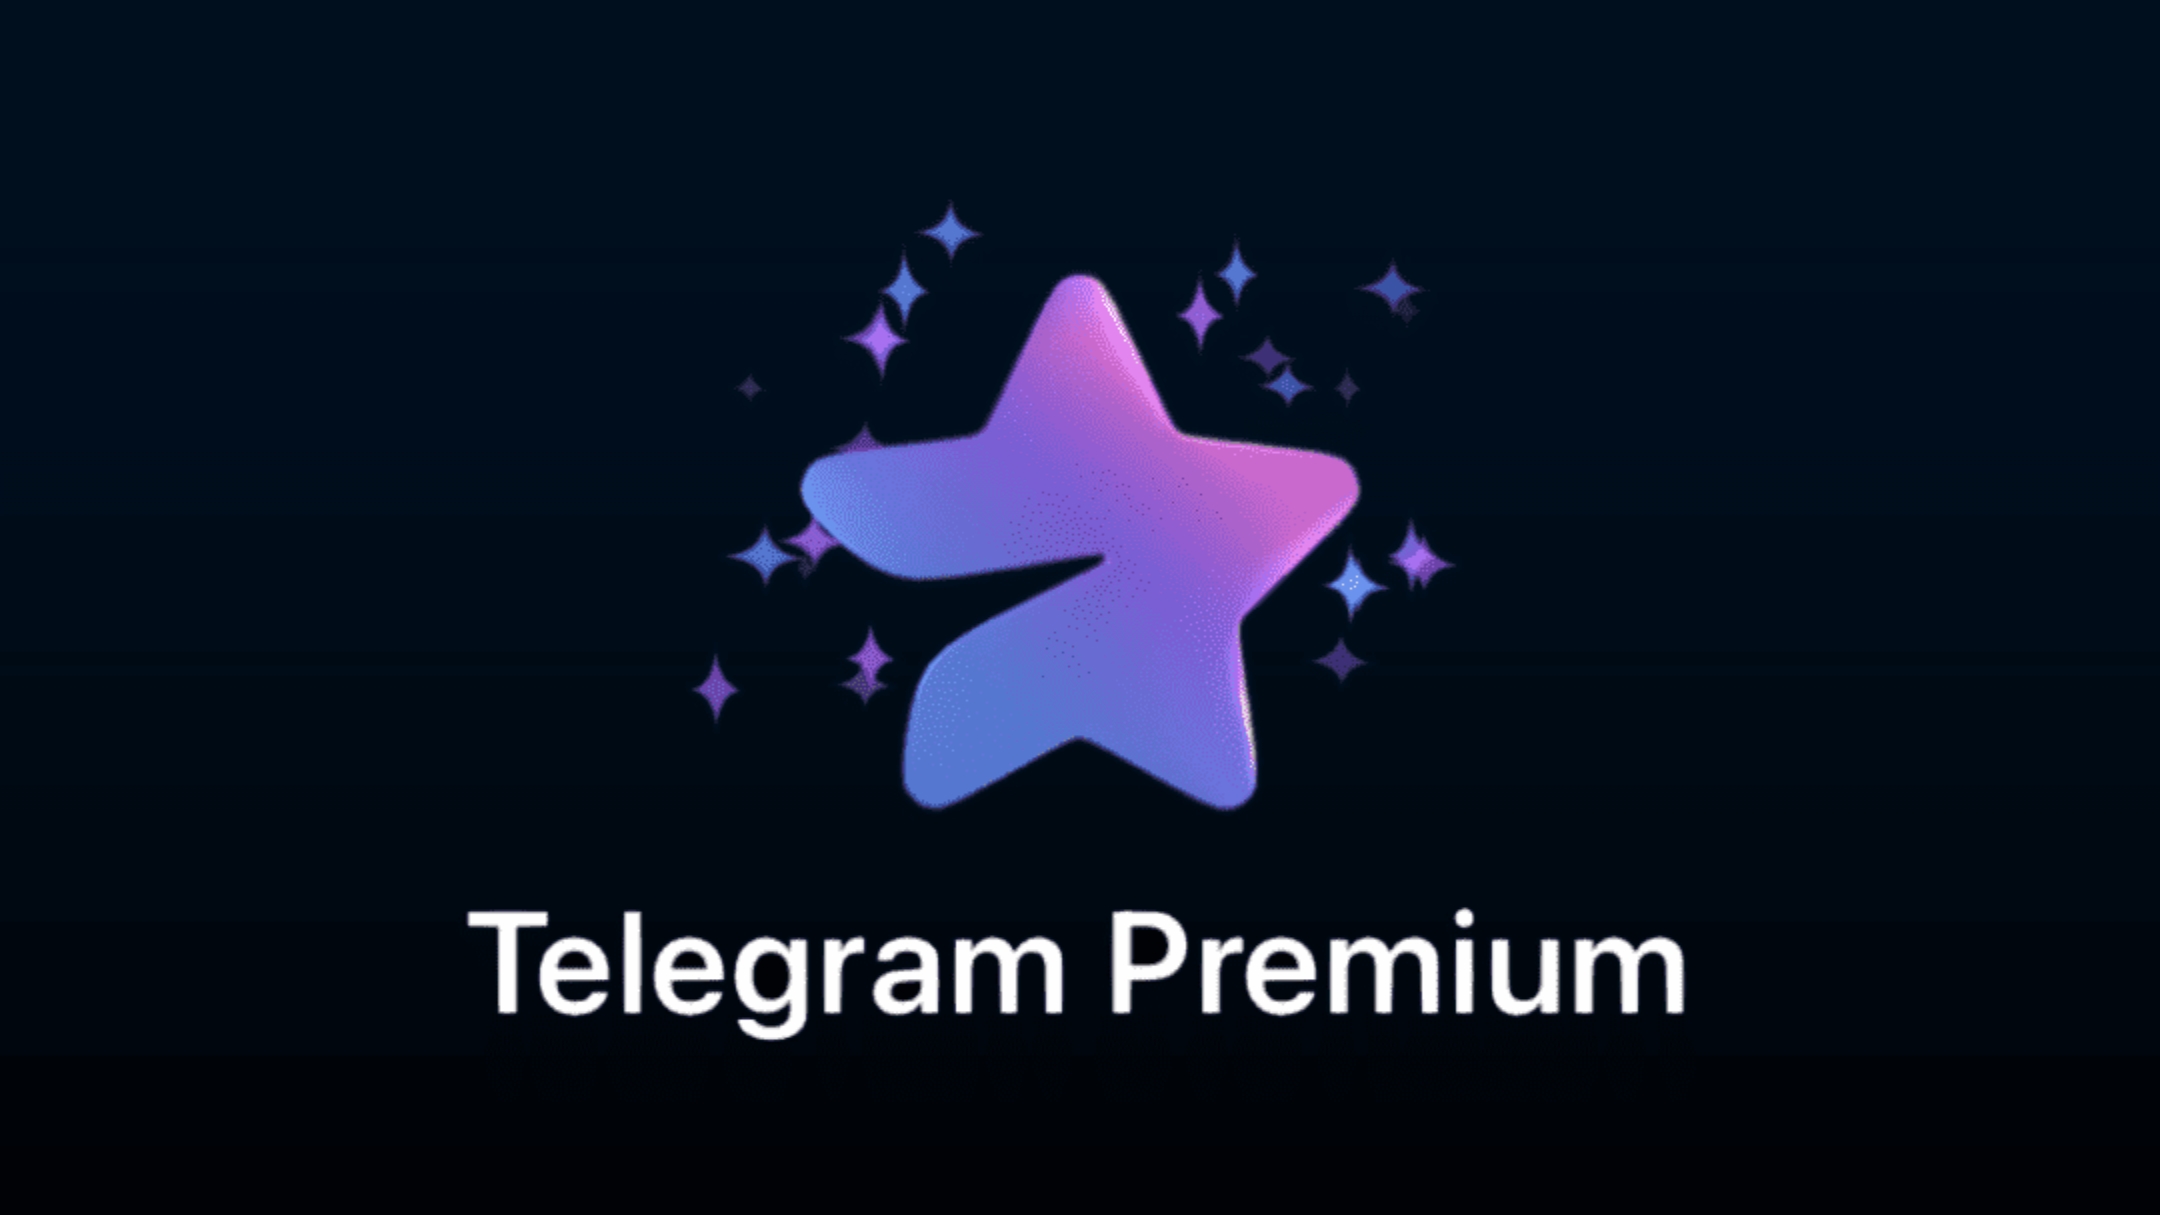 telegram-traz-novos-recursos-comerciais-para-usuarios-premium